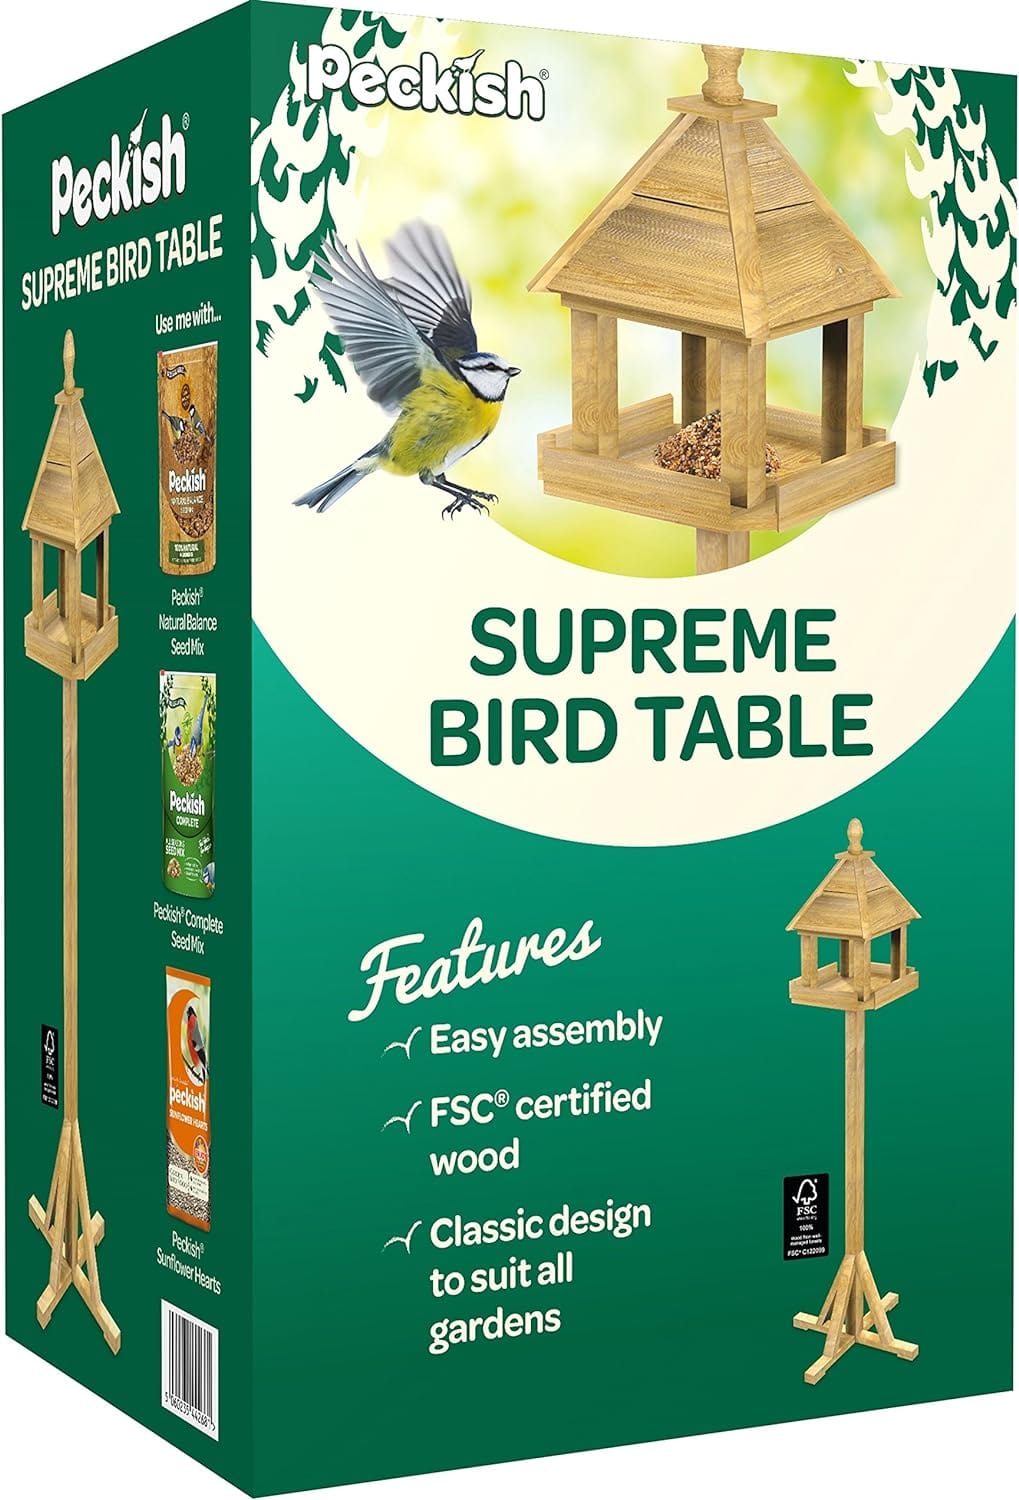 Peckish Bird Tables Peckish Supreme Garden Wooden Bird Table